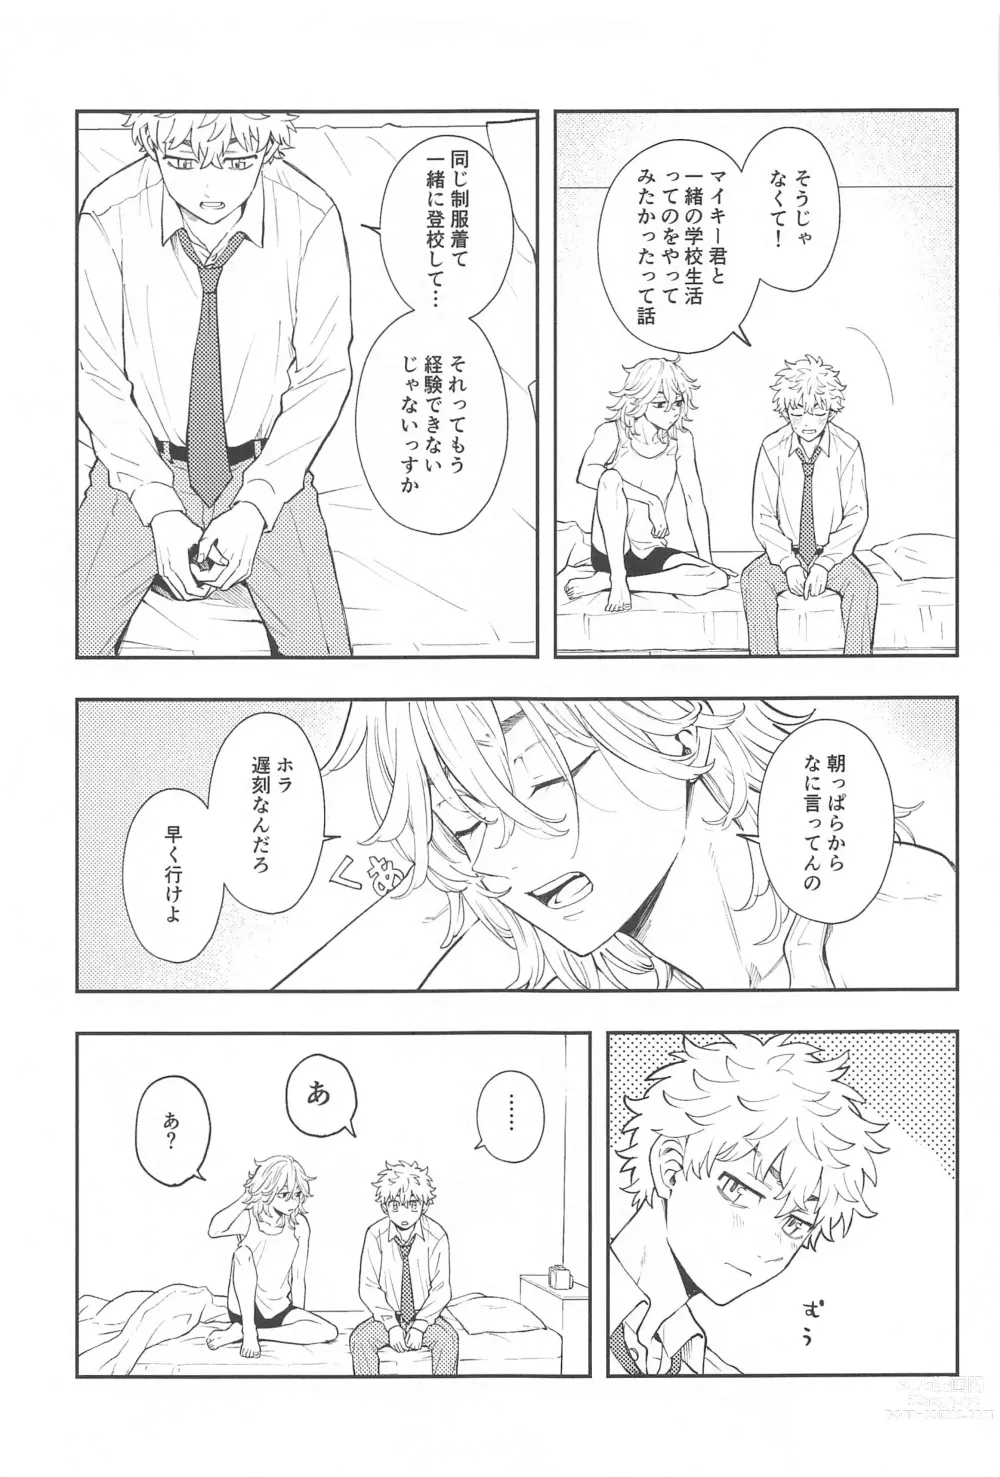 Page 4 of doujinshi Kyou wa Osoroi de!